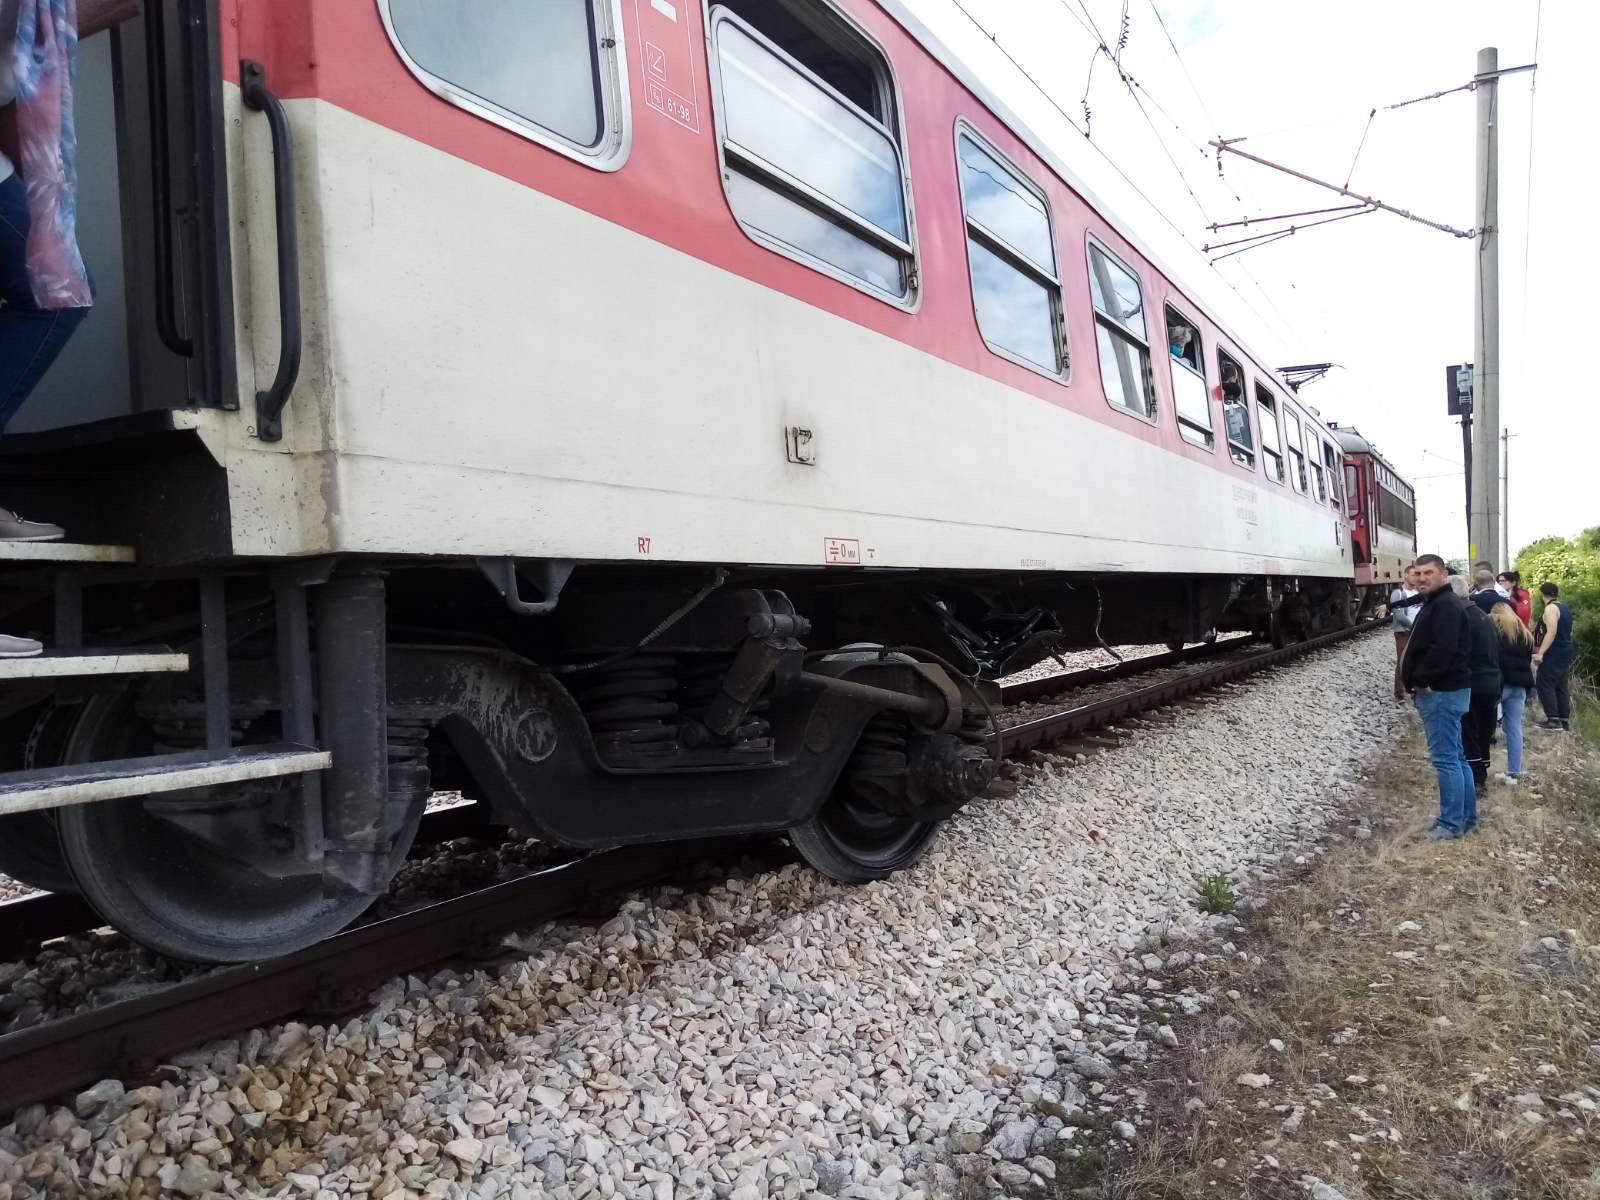 Влак е ударил инкасо автомобил в Разградско, съобщиха от полицията.
Сигнал